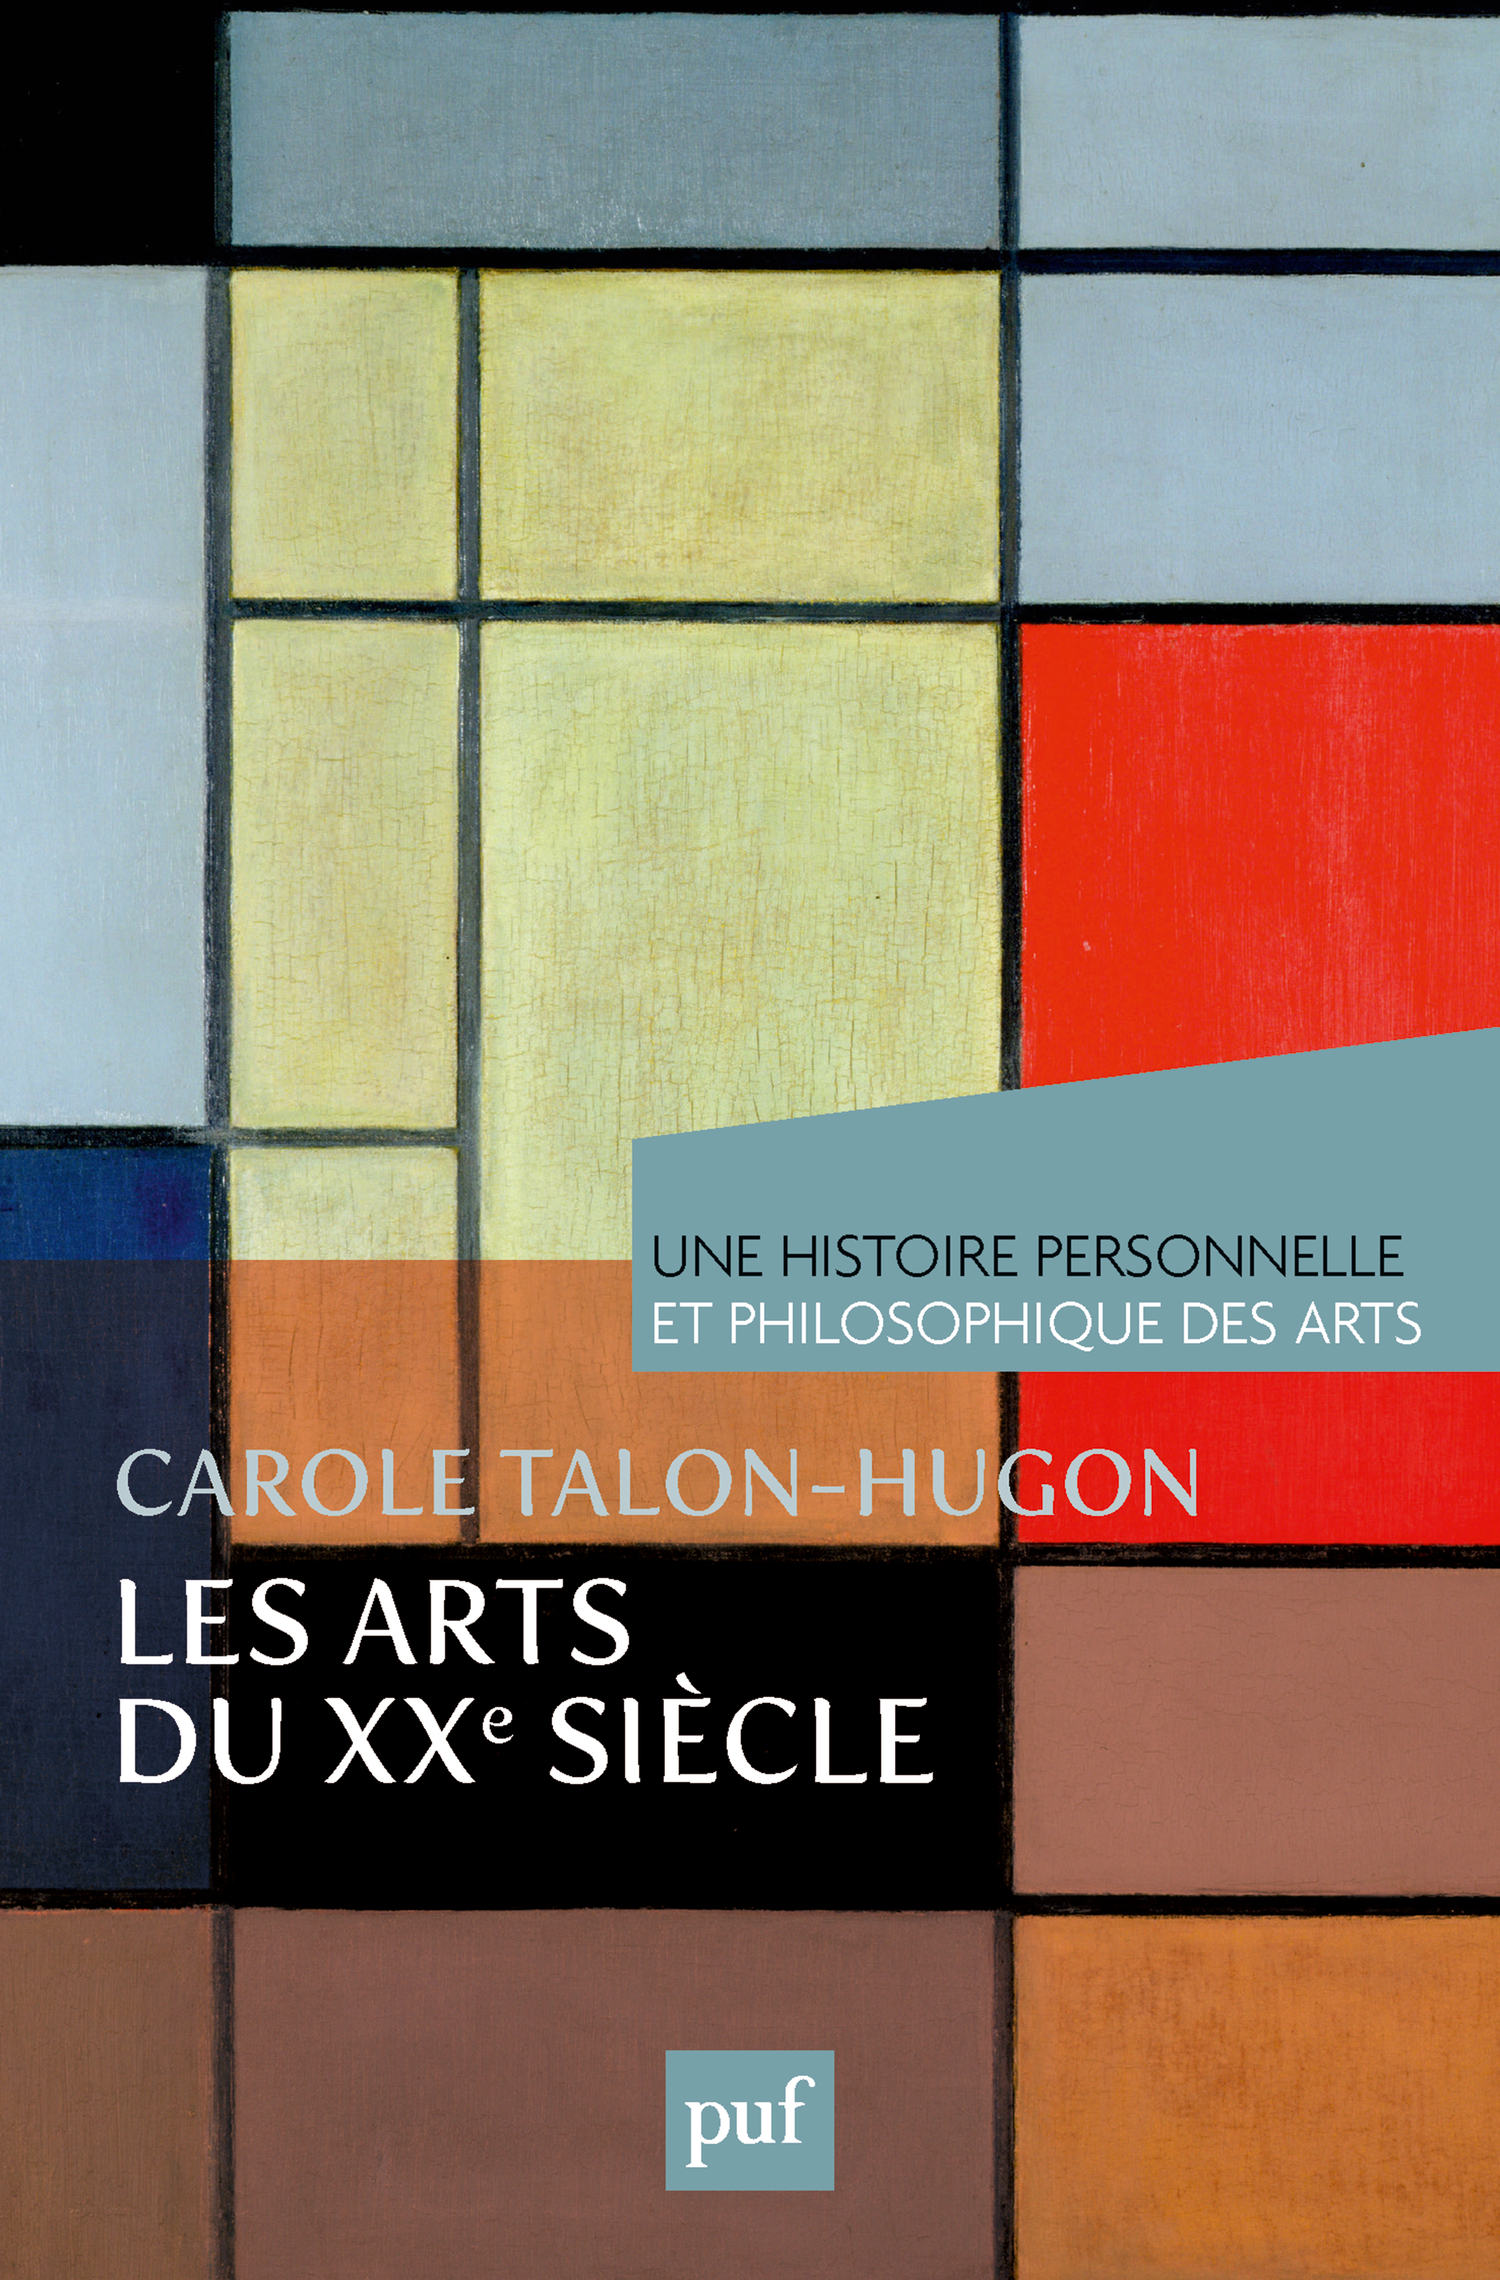 Les arts du XXe siècle De Carole Talon-Hugon - Presses Universitaires de France